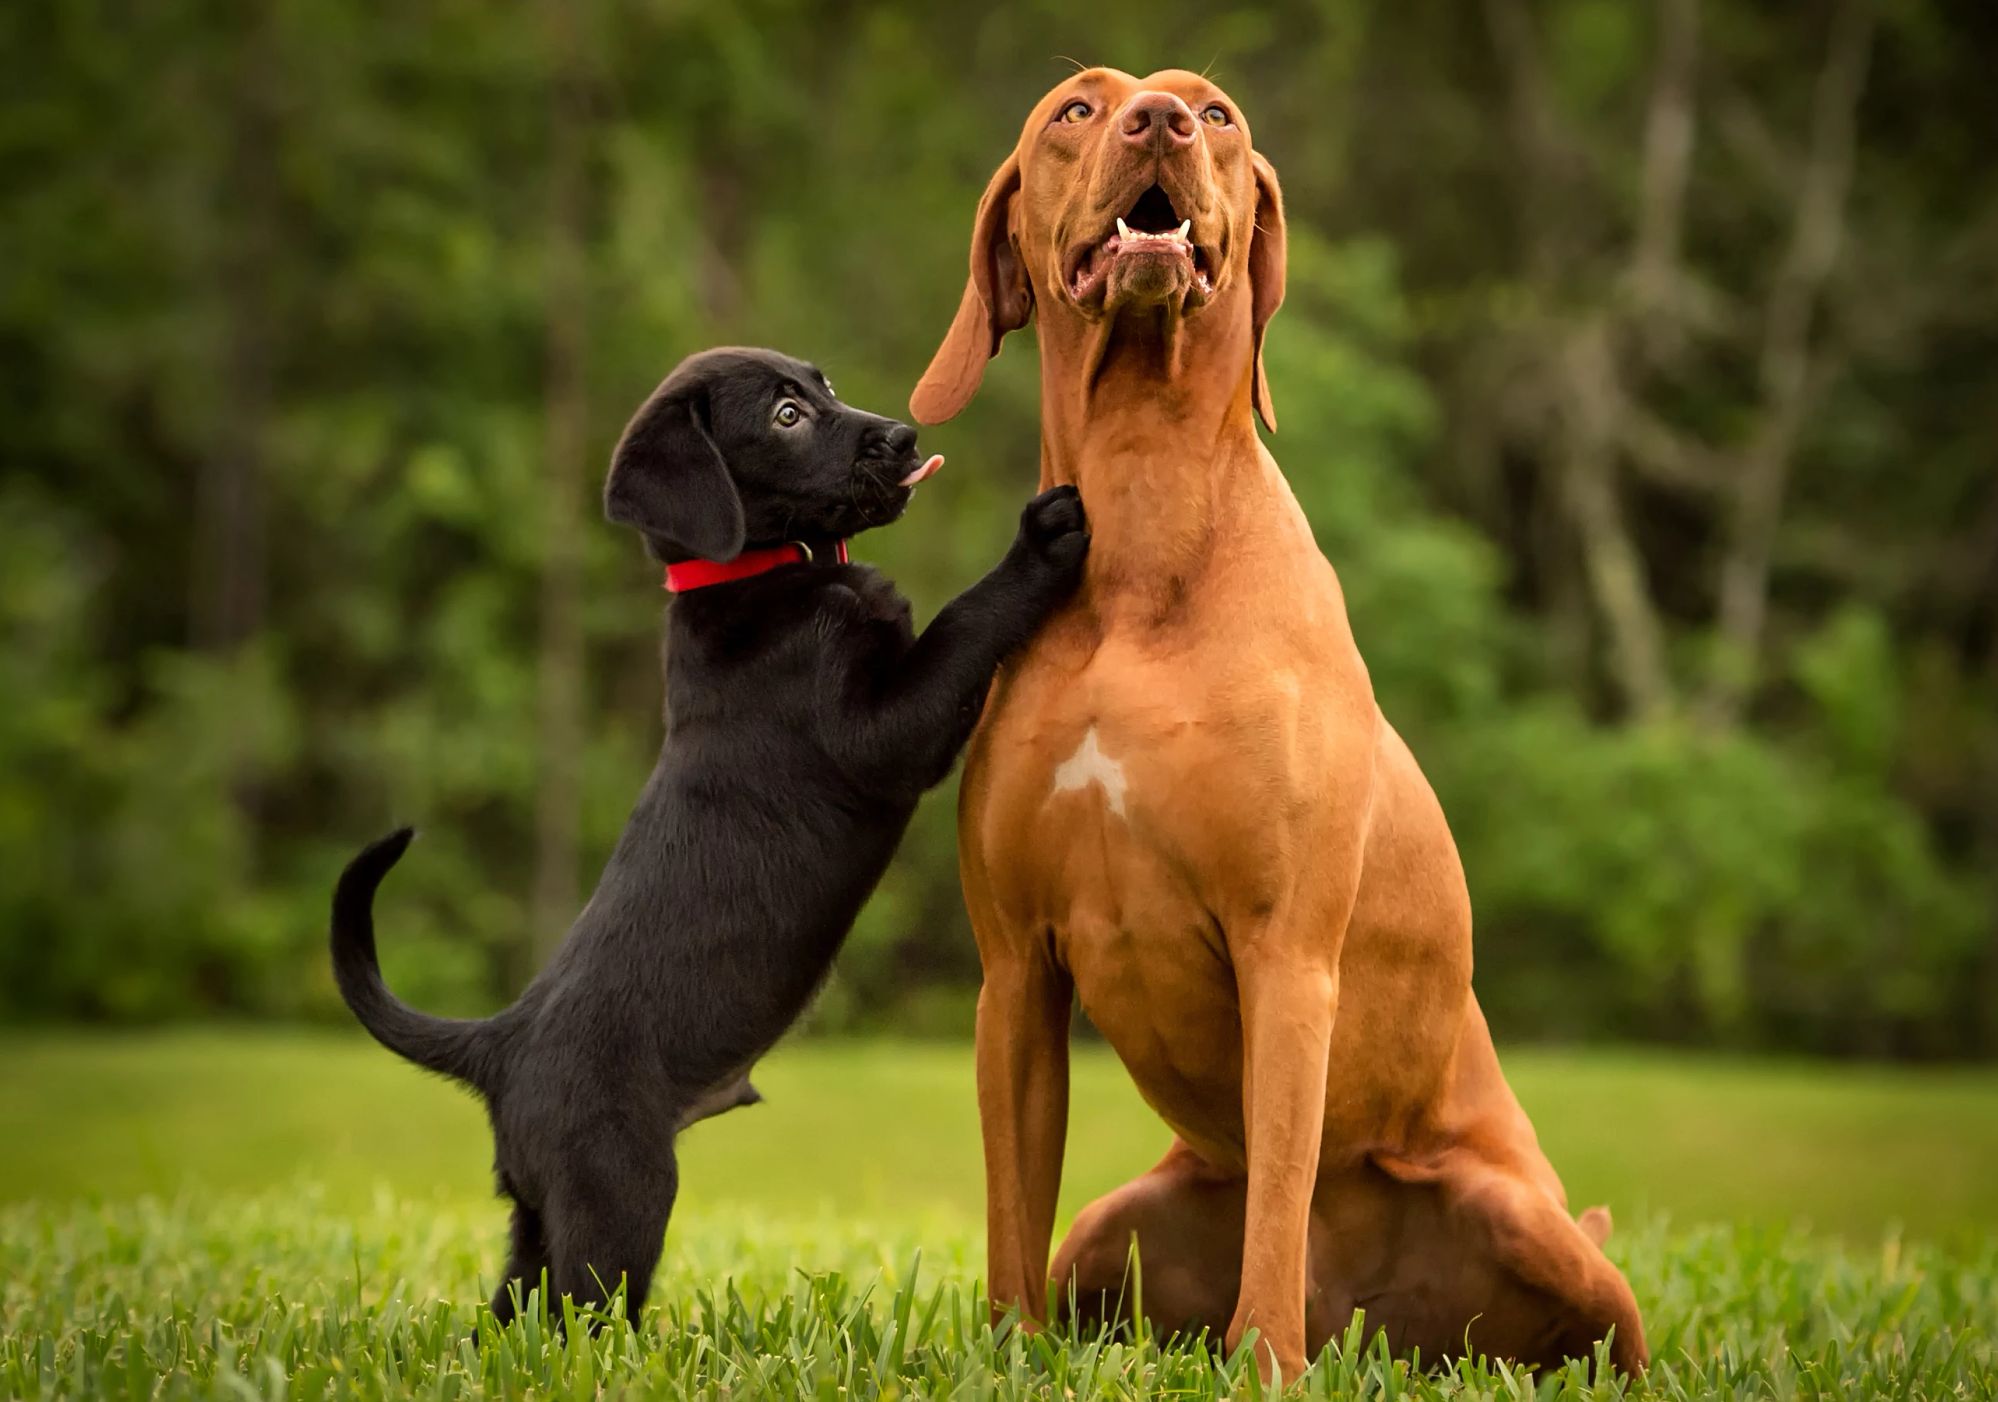 A black Labrador retriever puppy cuddles and a brown Labrador retriever 